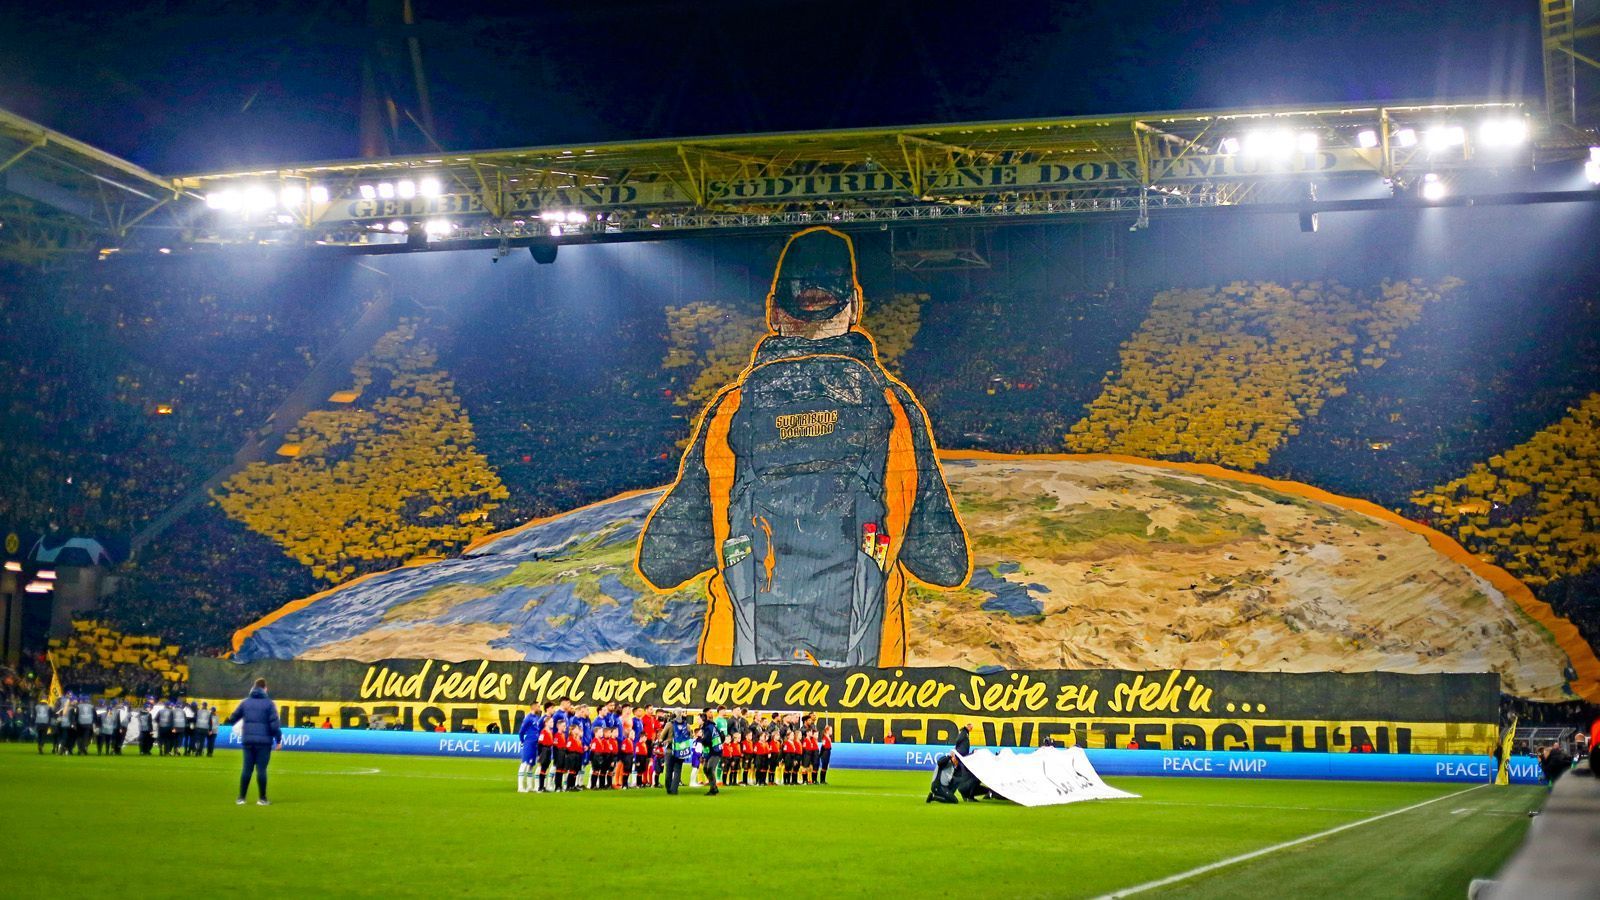 
                <strong>Borussia Dortmund - Fans gegen FC Chelsea mit XXL-Choreo</strong><br>
                Die Fans von Borussia Dortmund haben die beiden Duelle mit dem FC Chelsea mit einer die Südtribüne füllenden Choreografie eröffnet. Vor dem Hinspiel zogen die Anhänger ein XXL-Banner hoch. "Und jedes Mal war es wert an Deiner Seite zu steh'n" stand unter dem Kunstwerk. Eine Hommage an den BVB, aber auch an die Fans, die ihre Mannschaft immer und überall unterstützen. Ob nun in Dortmund oder auf der ganzen Welt.
              